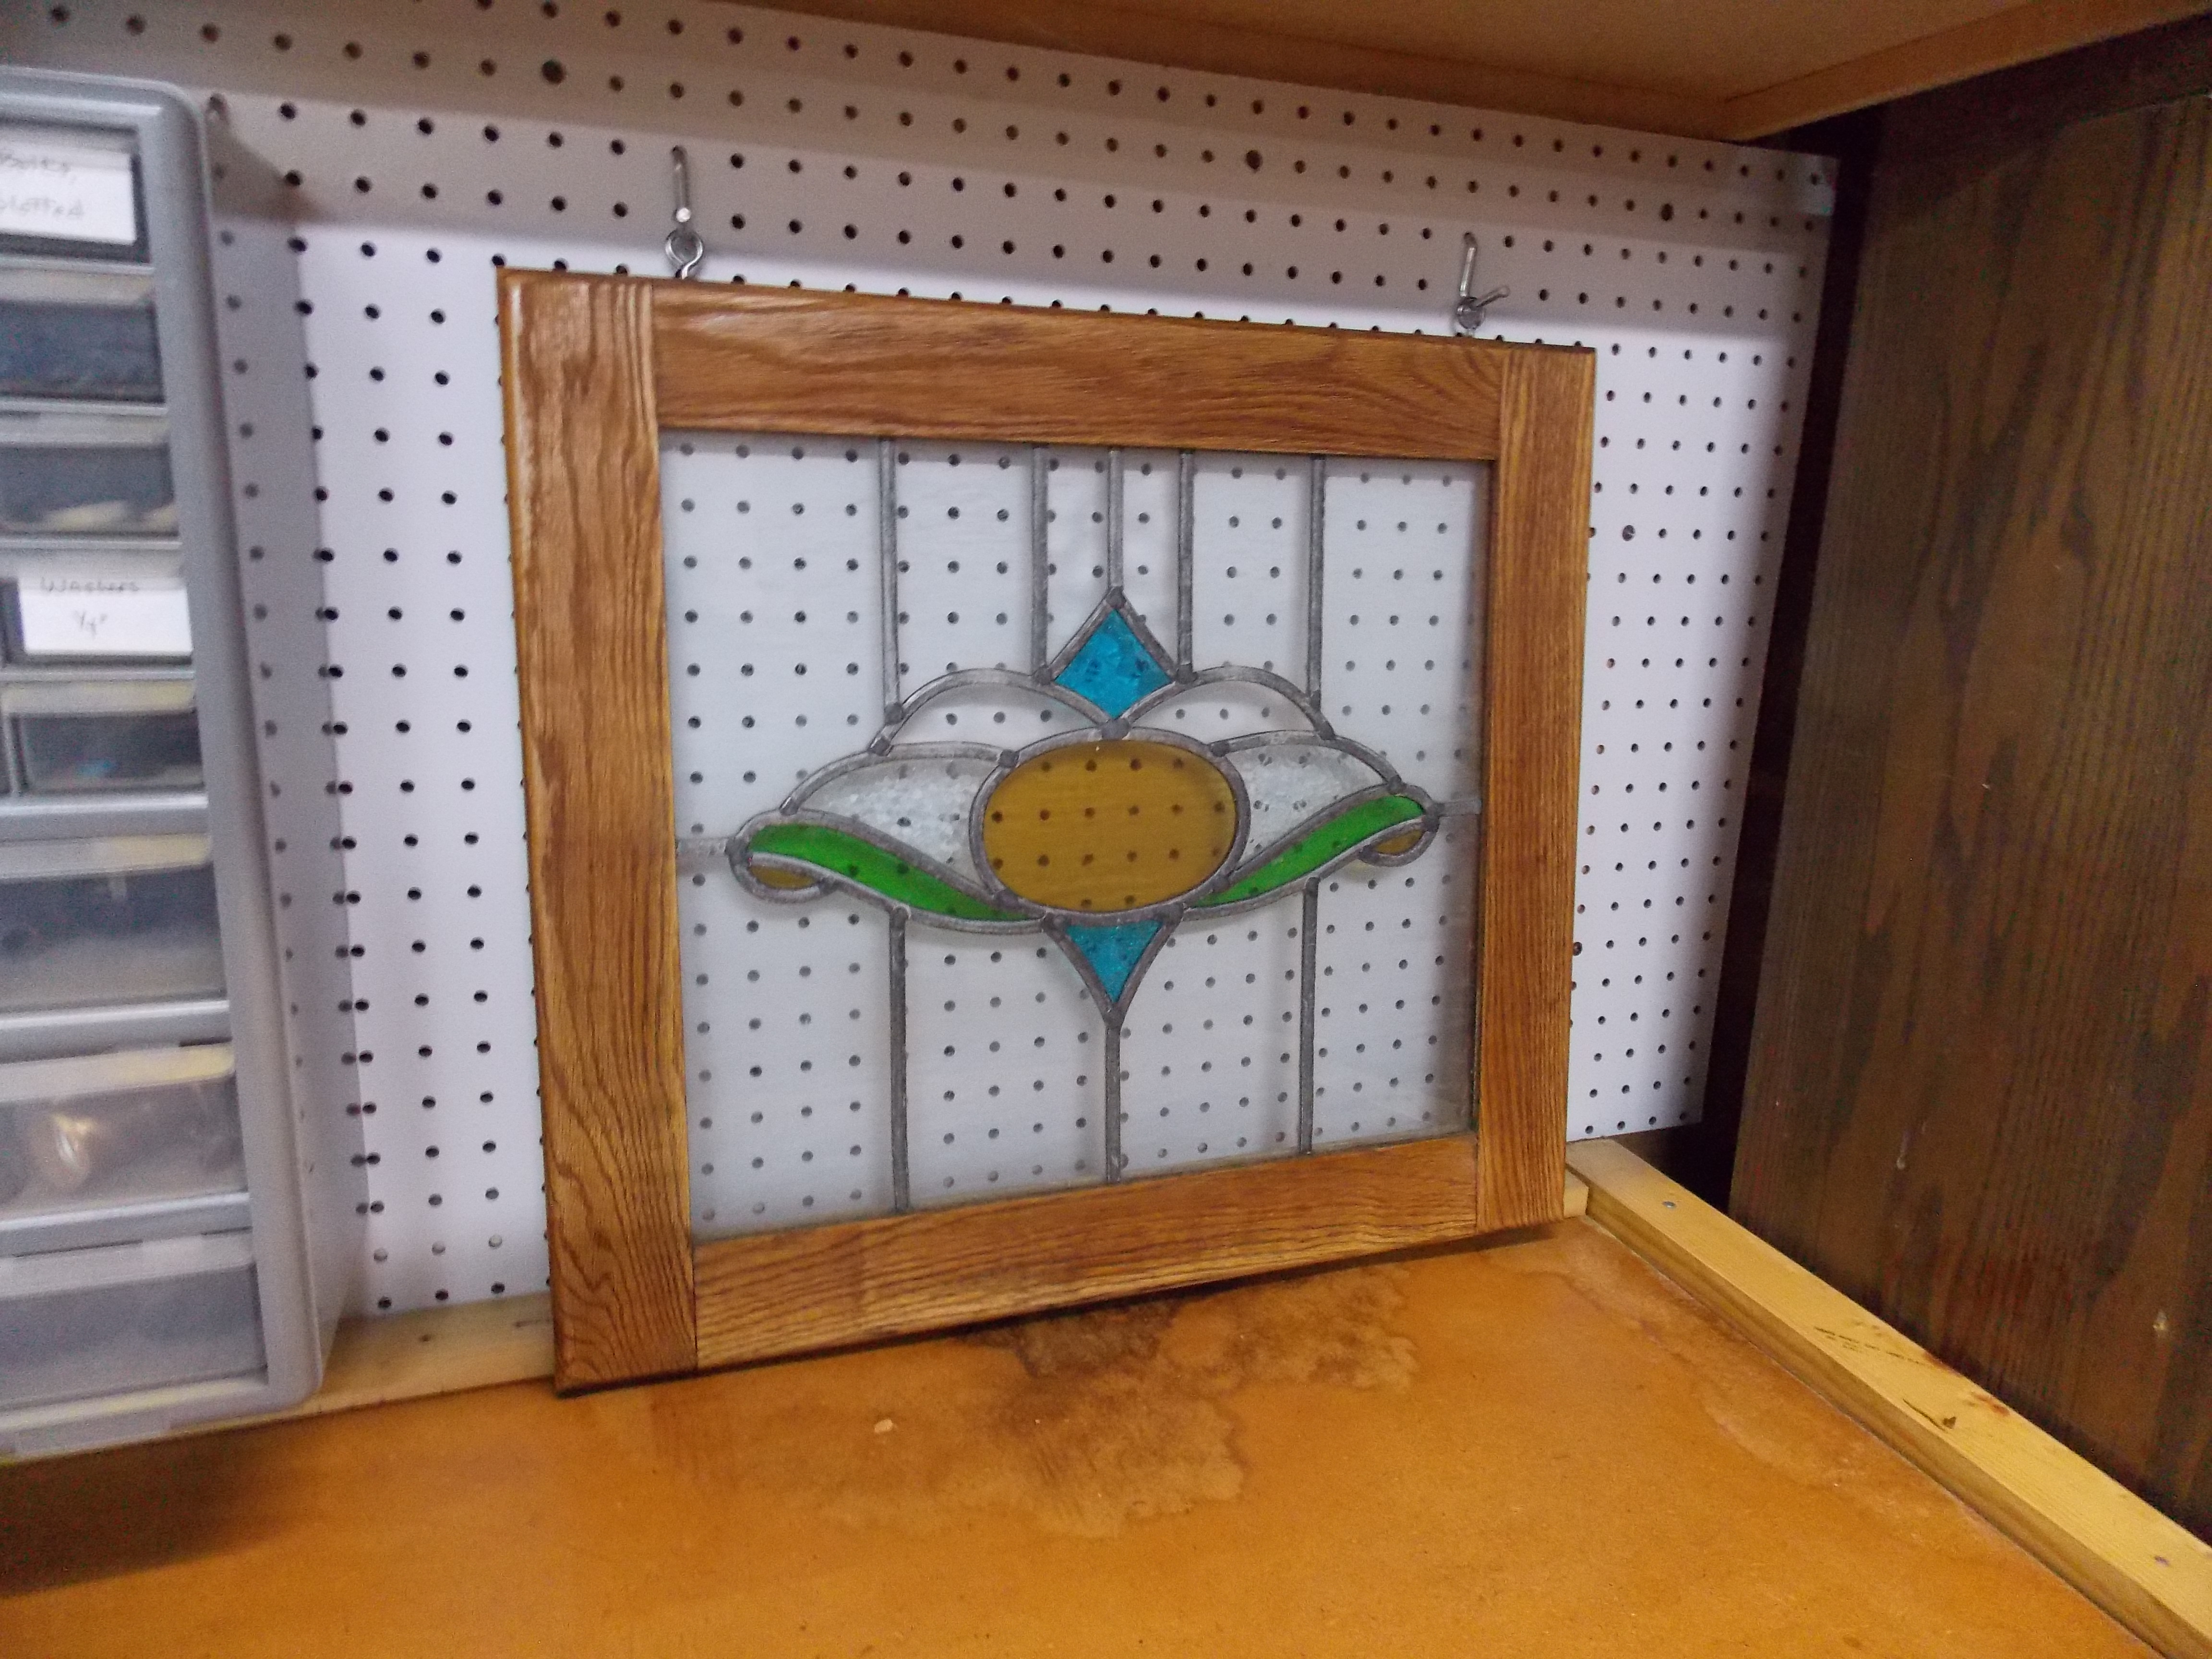 Oak-Framed Stained Glass Window in Wood Shop